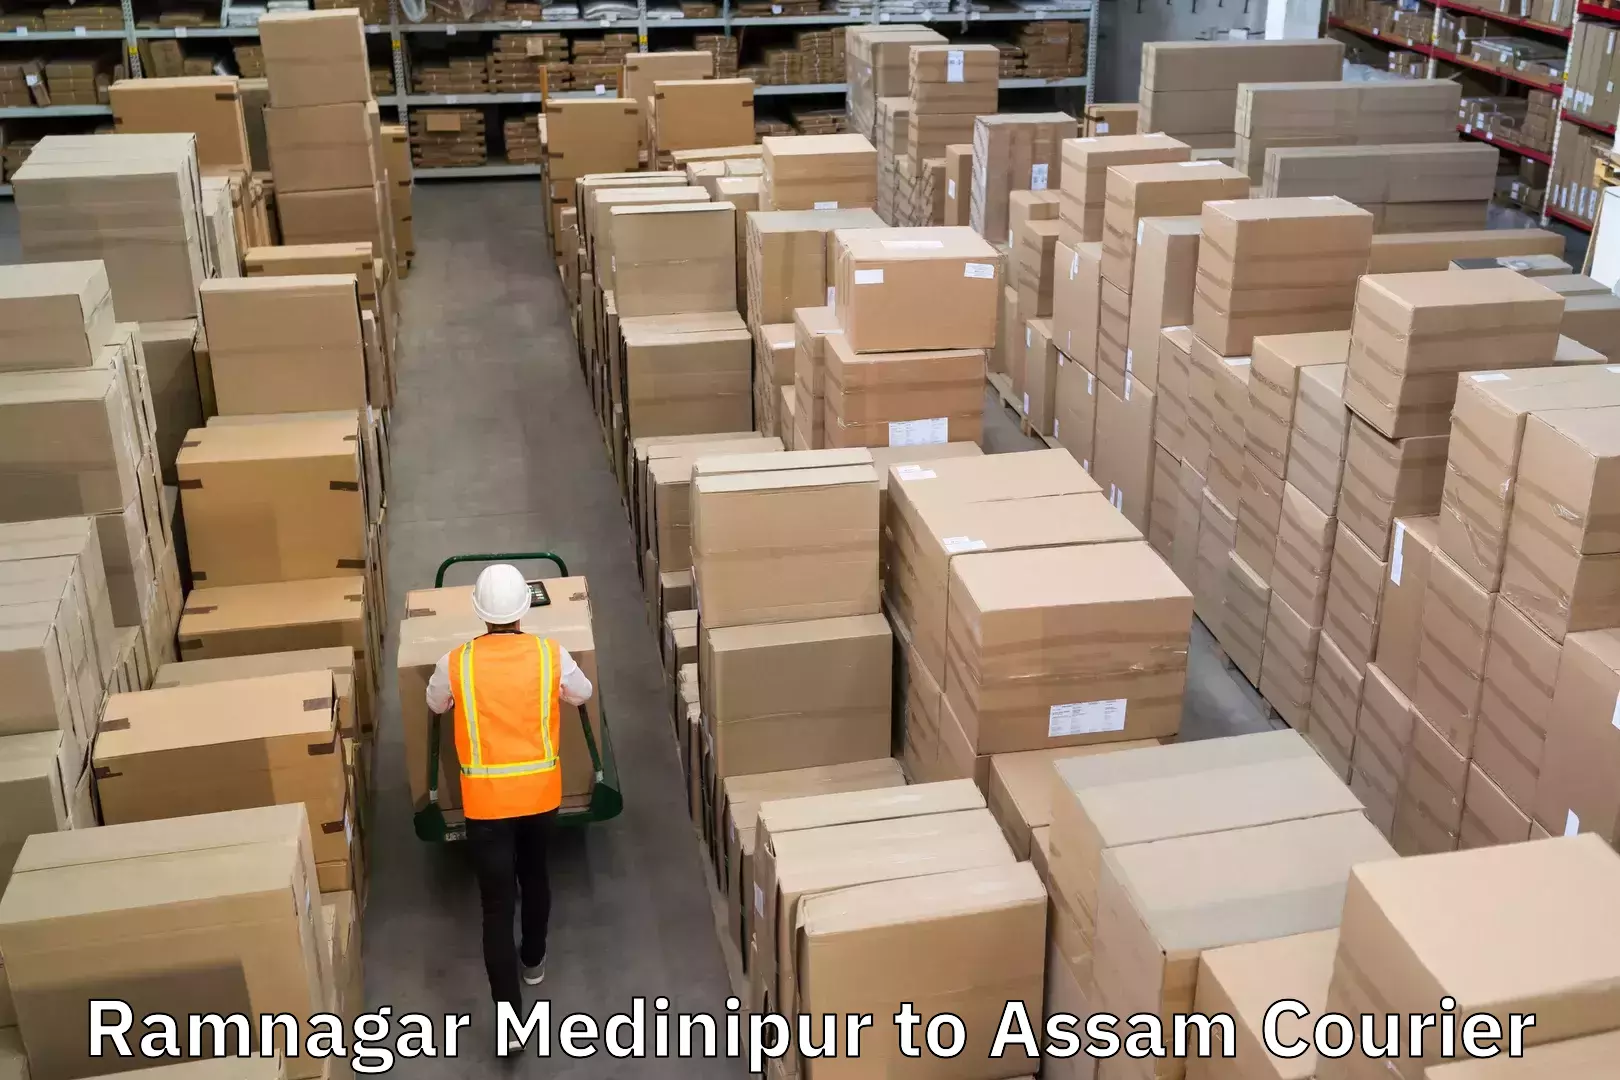 Efficient parcel tracking Ramnagar Medinipur to Assam